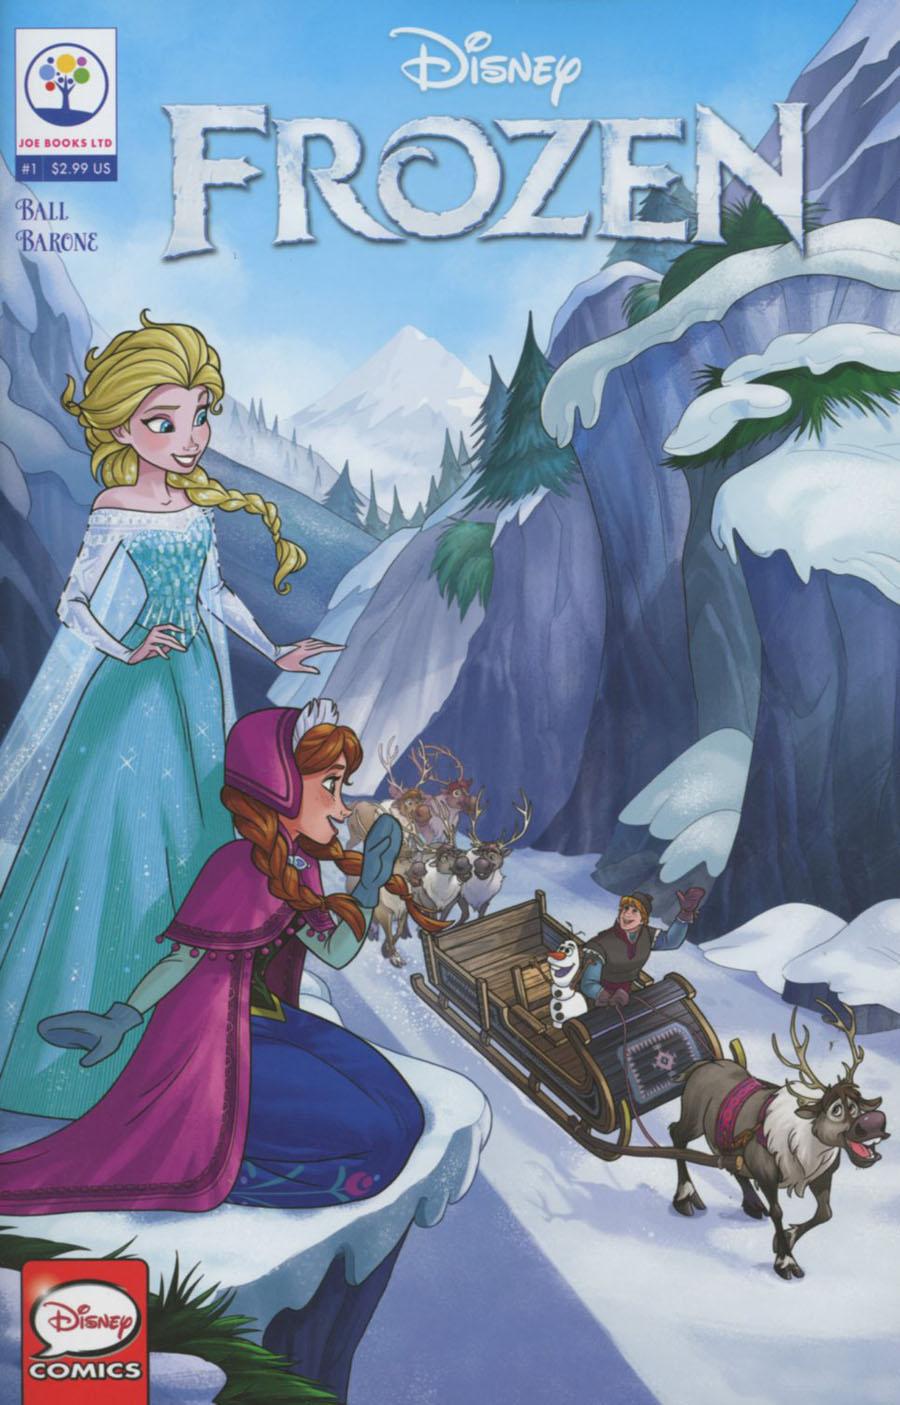 Disneys Frozen Vol. 1 #1